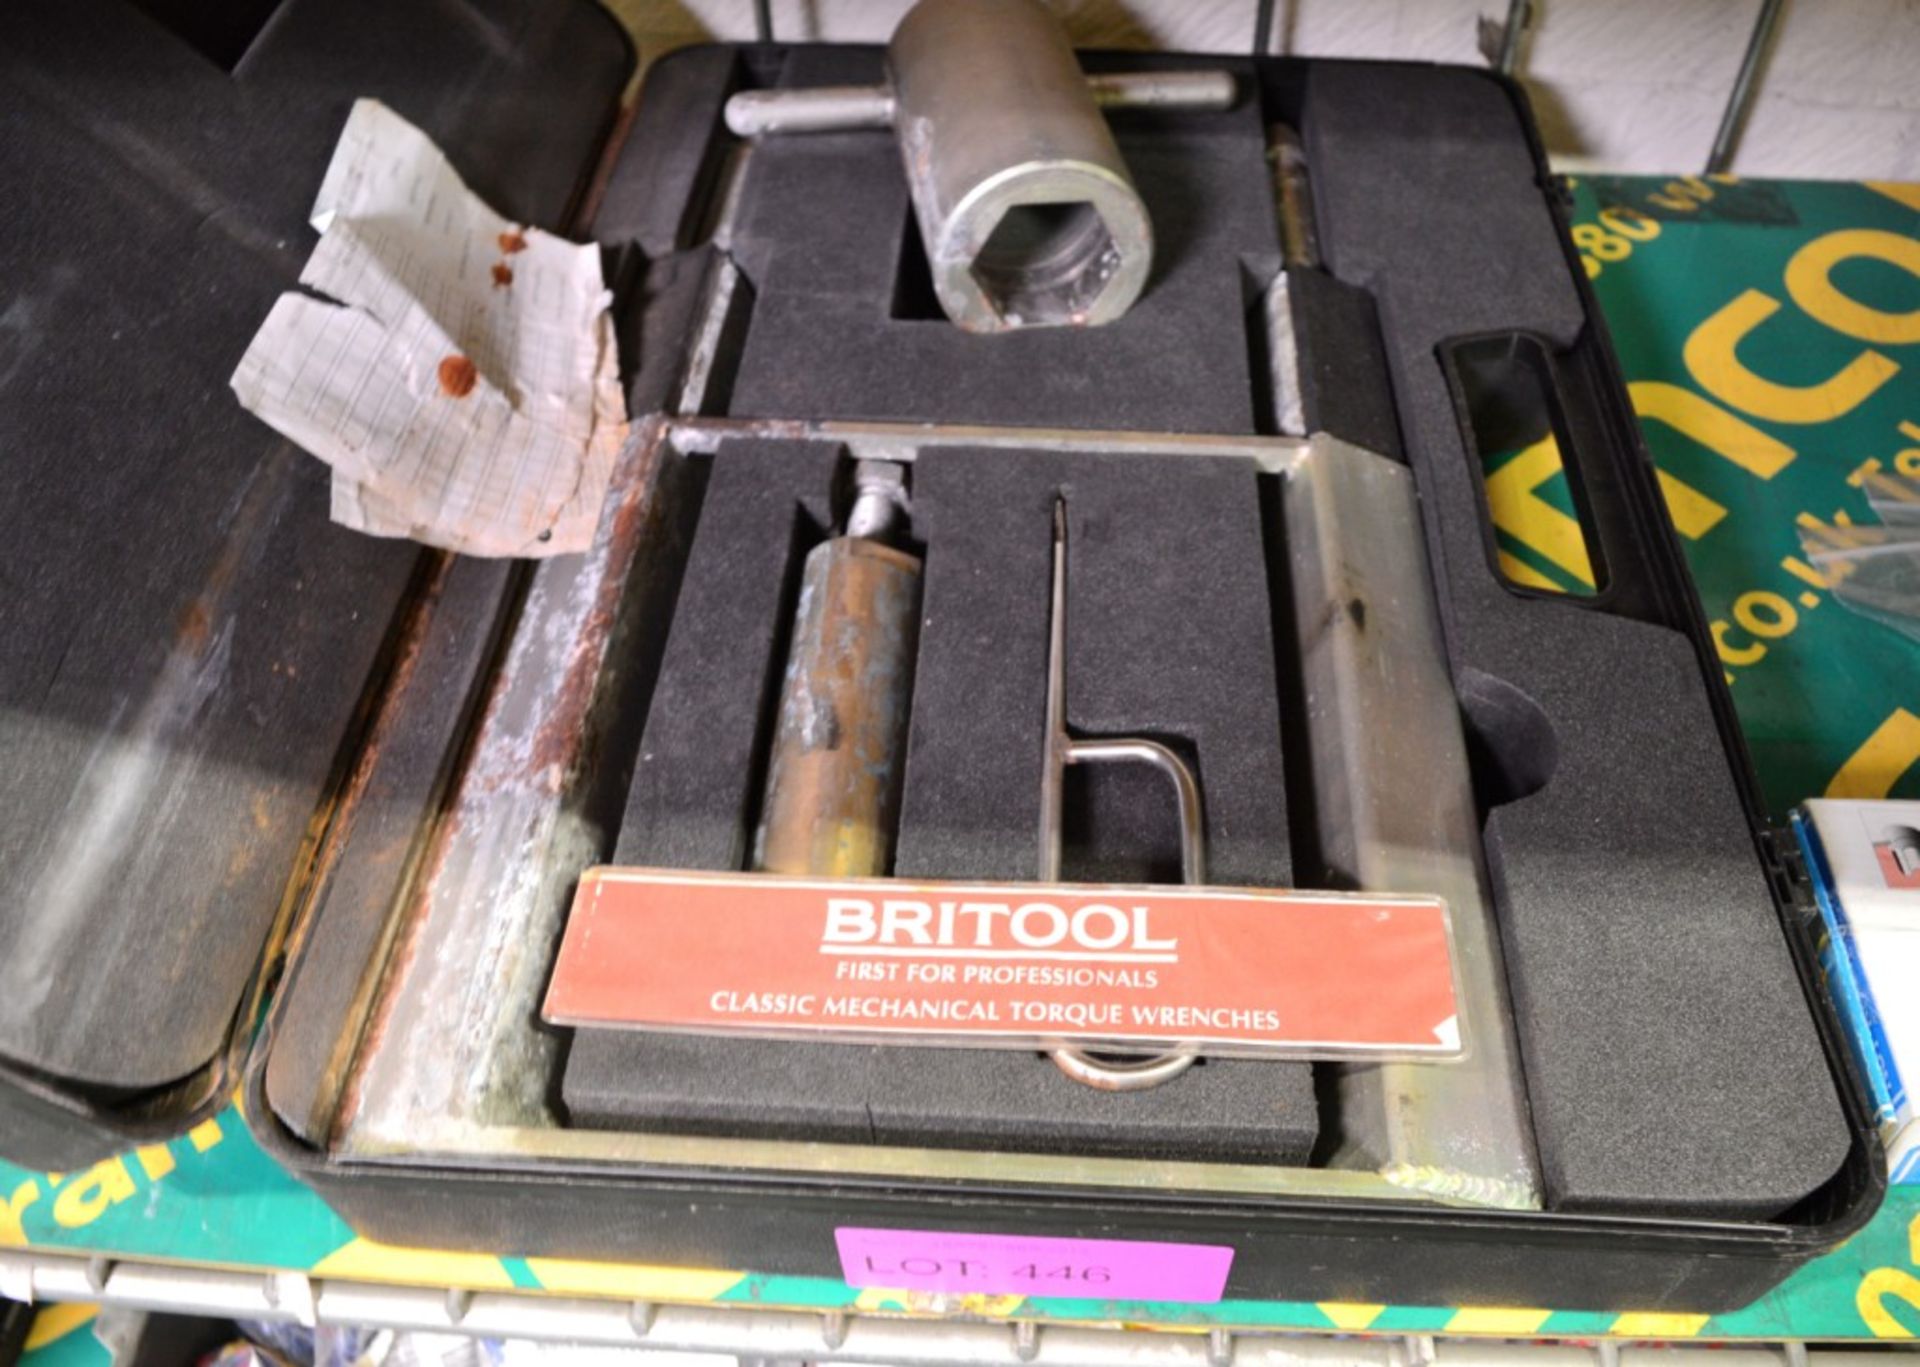 Britool Specialist Tool in Case - Bild 2 aus 2